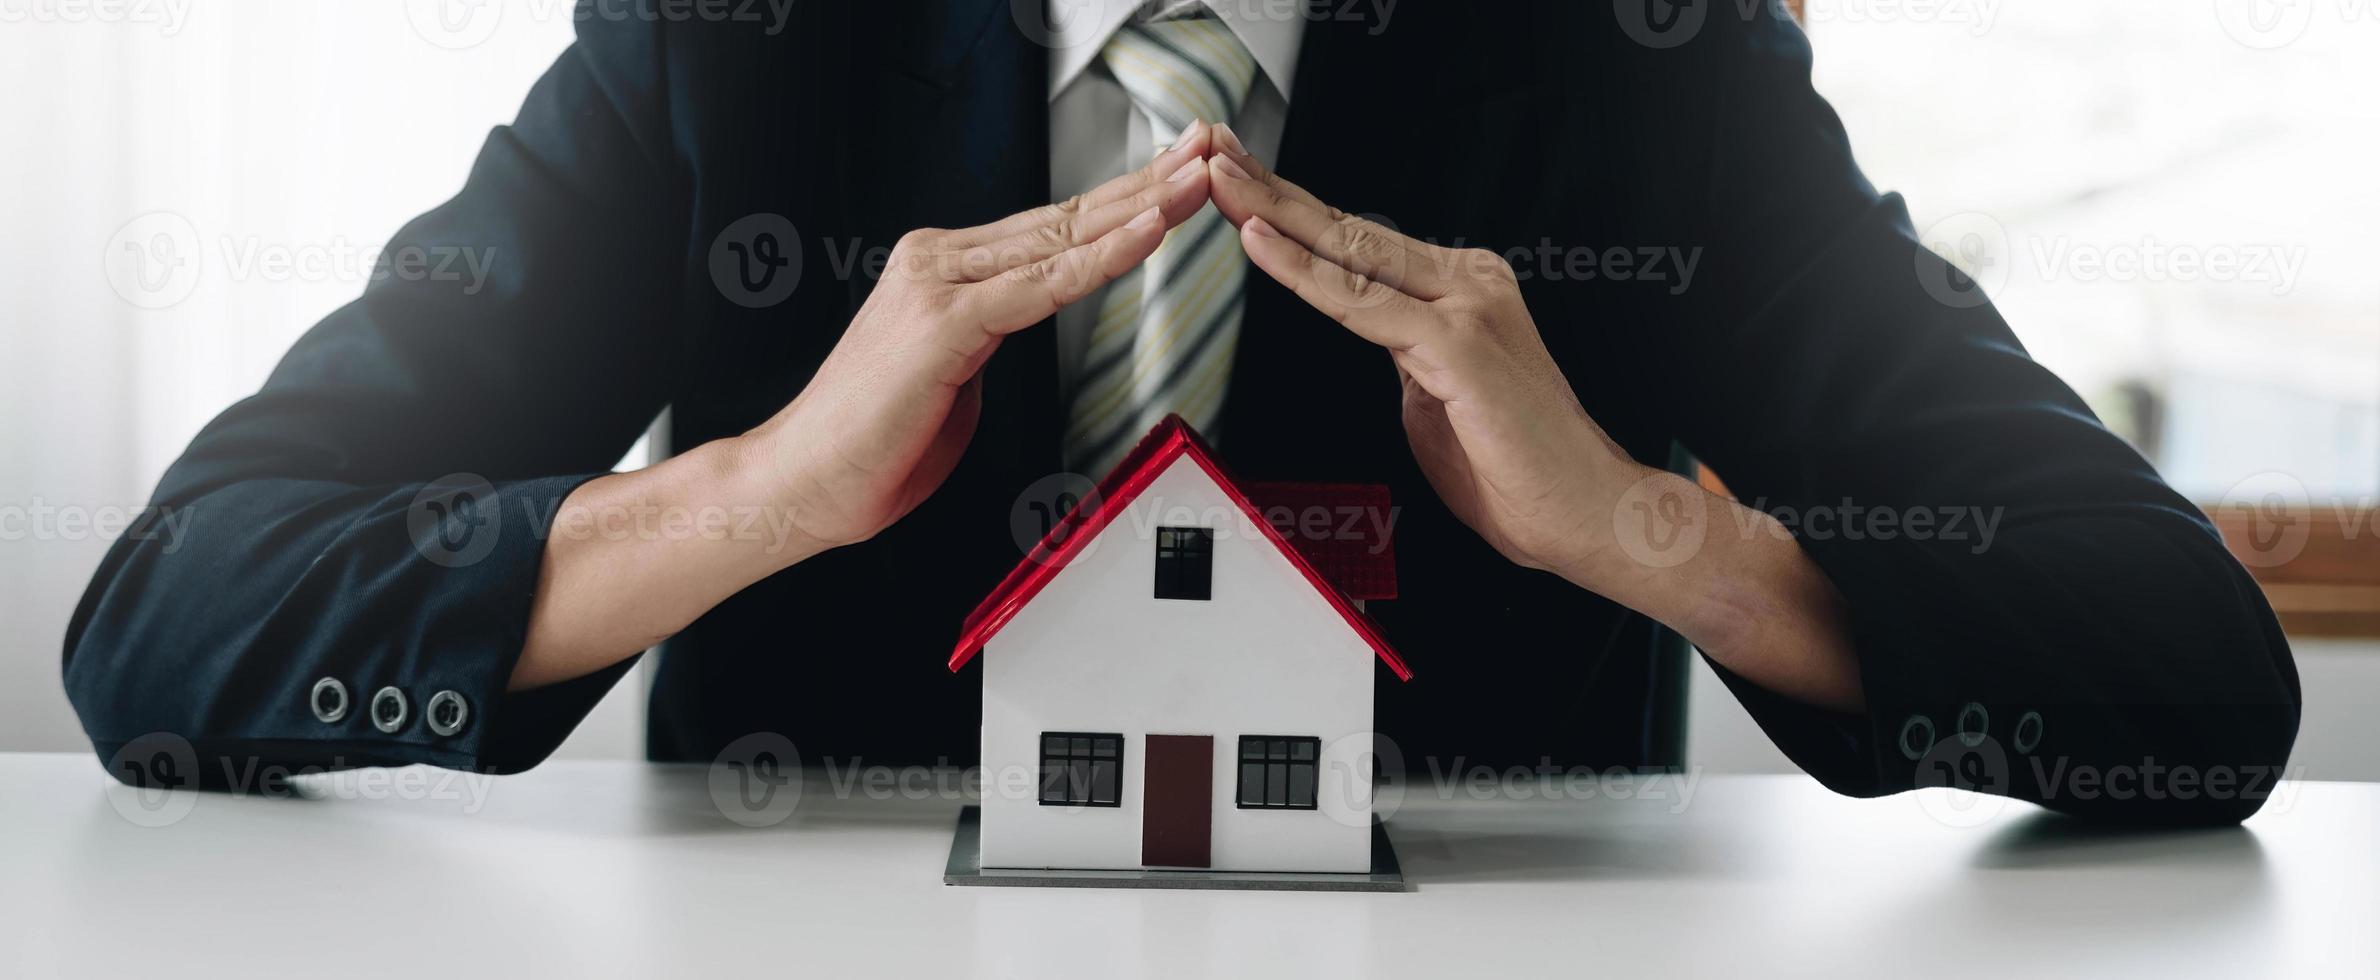 une petite maison modèle grise est un exemple de maison dans un projet domiciliaire, un vendeur d'assurance fait un acte symbolique de protection du domicile en assurance habitation. concept de crédit-bail immobilier. photo